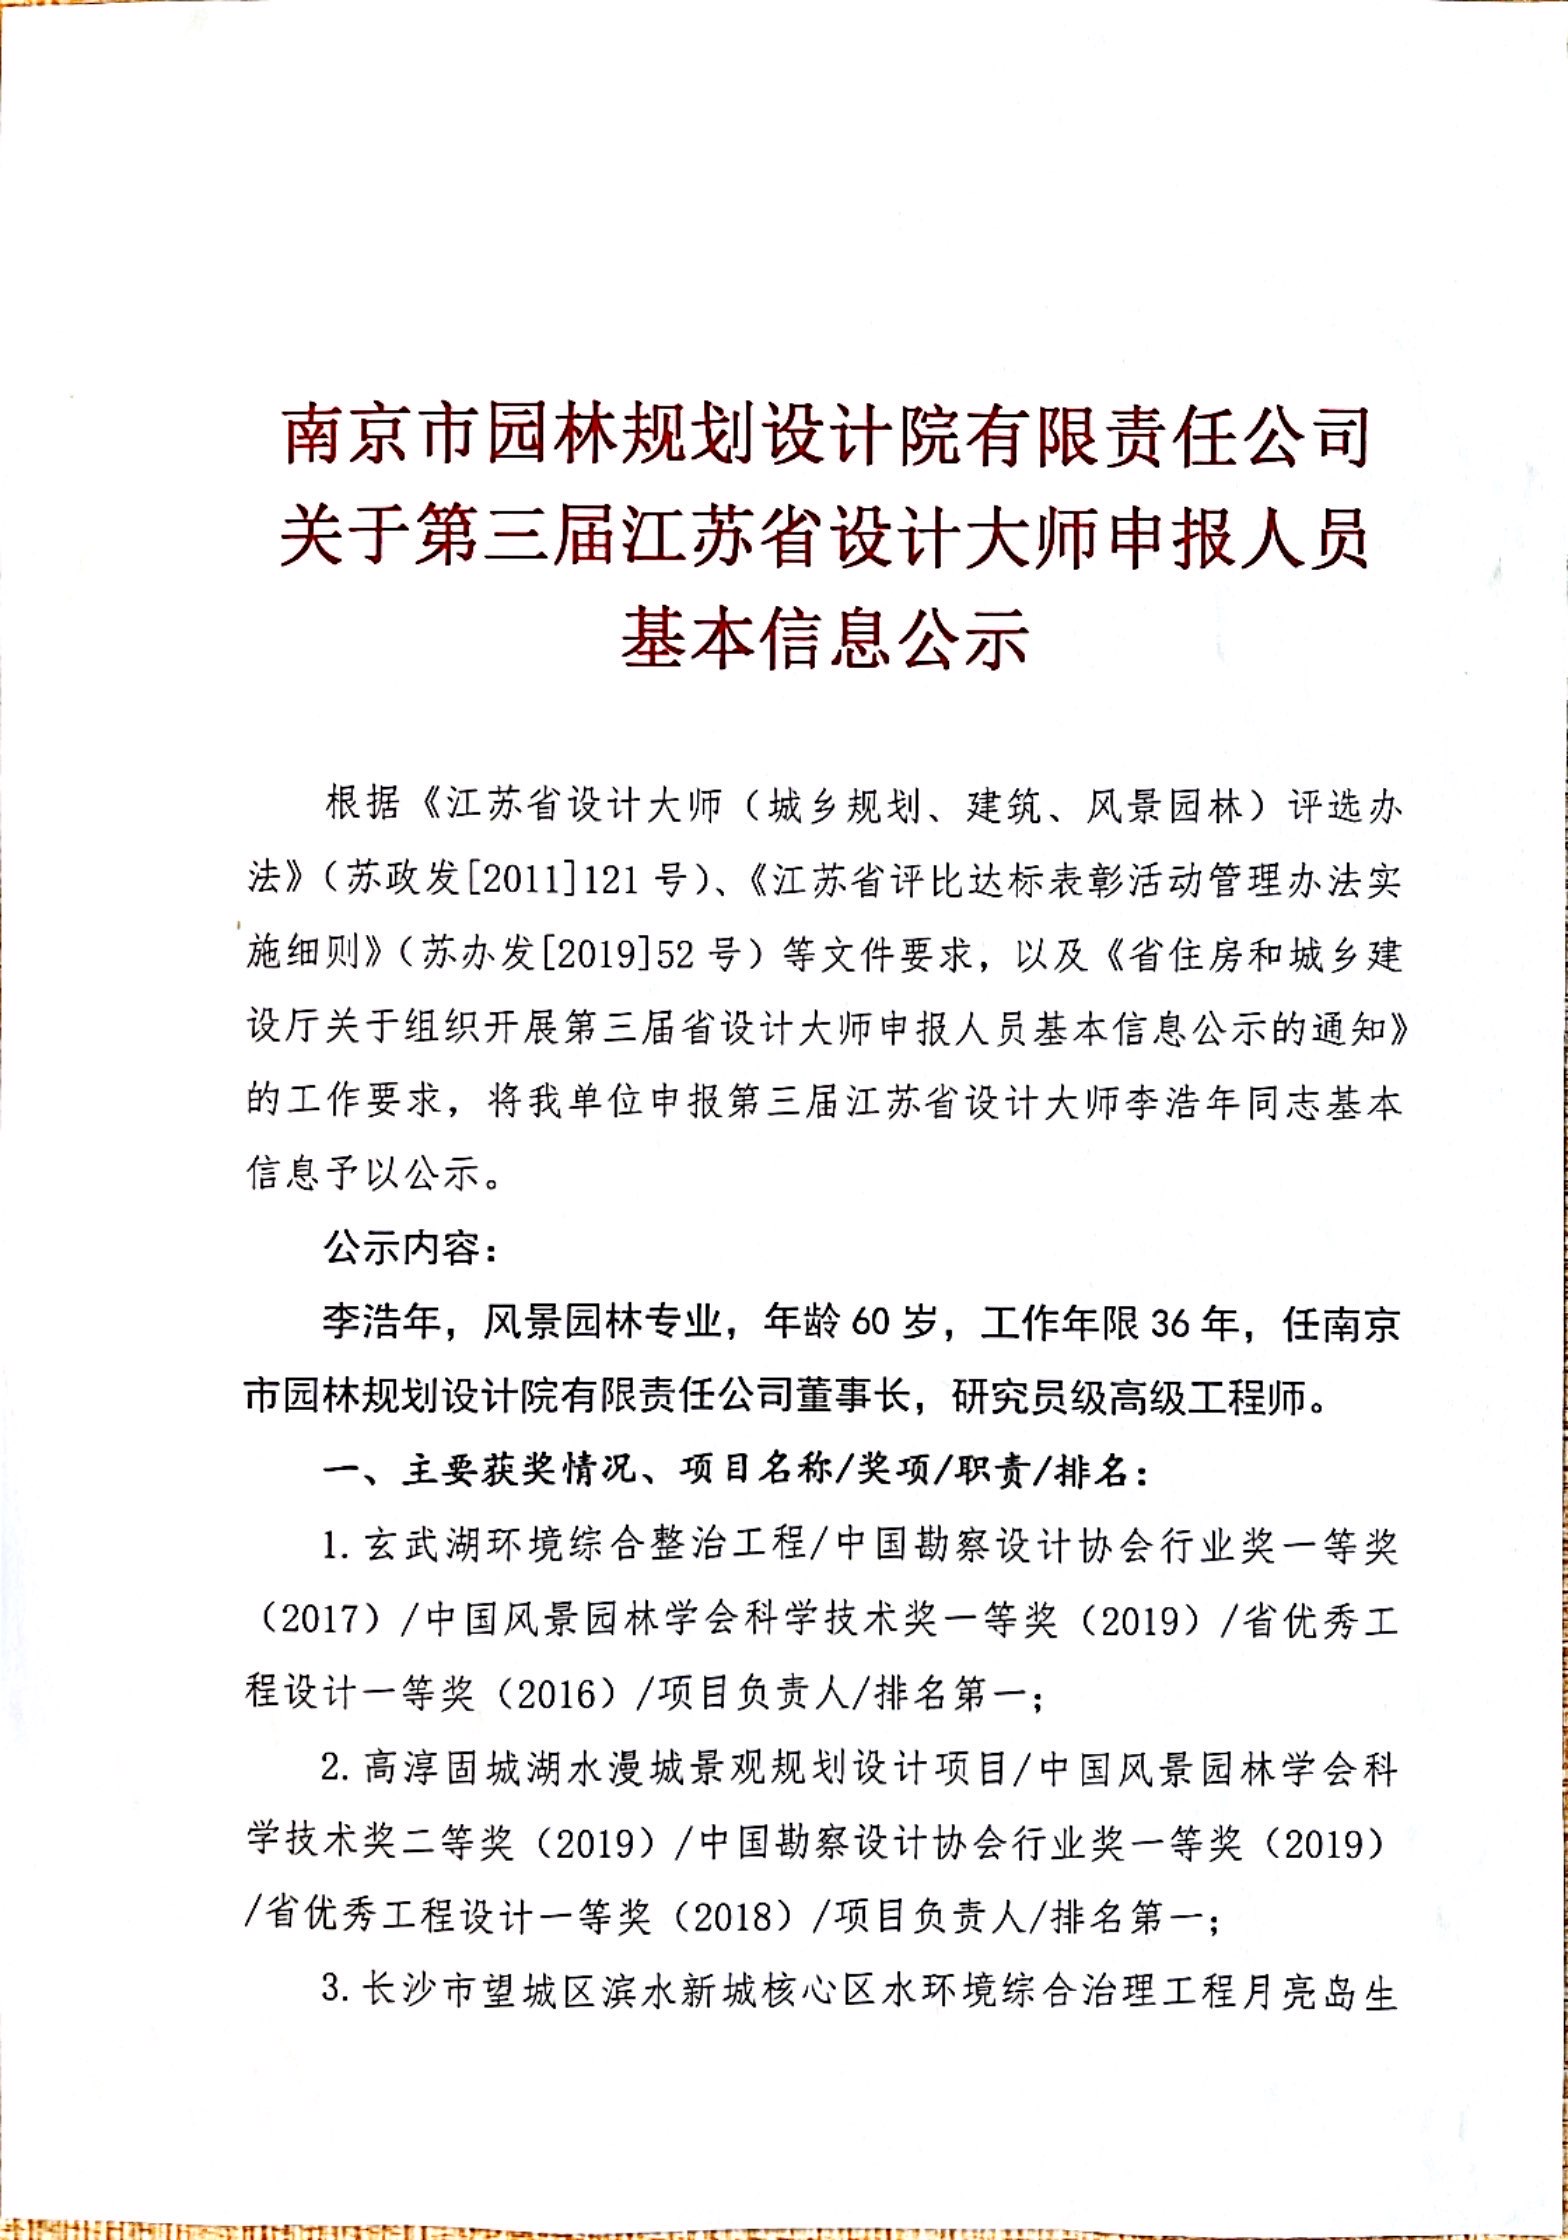 南京市园林规划设计院有限责任公司关于第三届江苏省设计大师申报人员